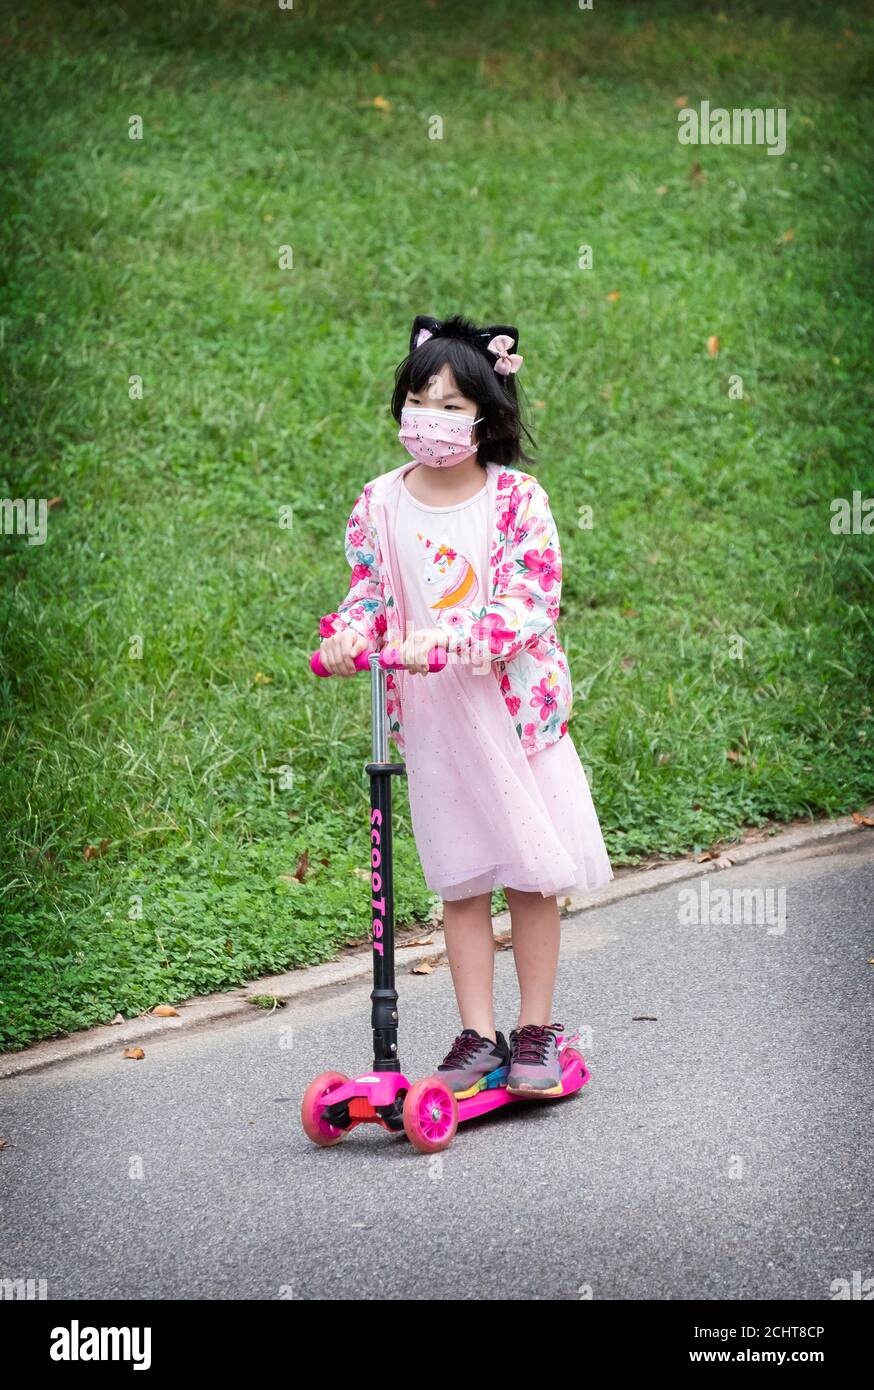 Ein extrem süßes asiatisch-amerikanisches Mädchen, das in Rosa gekleidet ist, fährt ihren Allrad-Roller in einem Park in Queens, New York City. Stockfoto